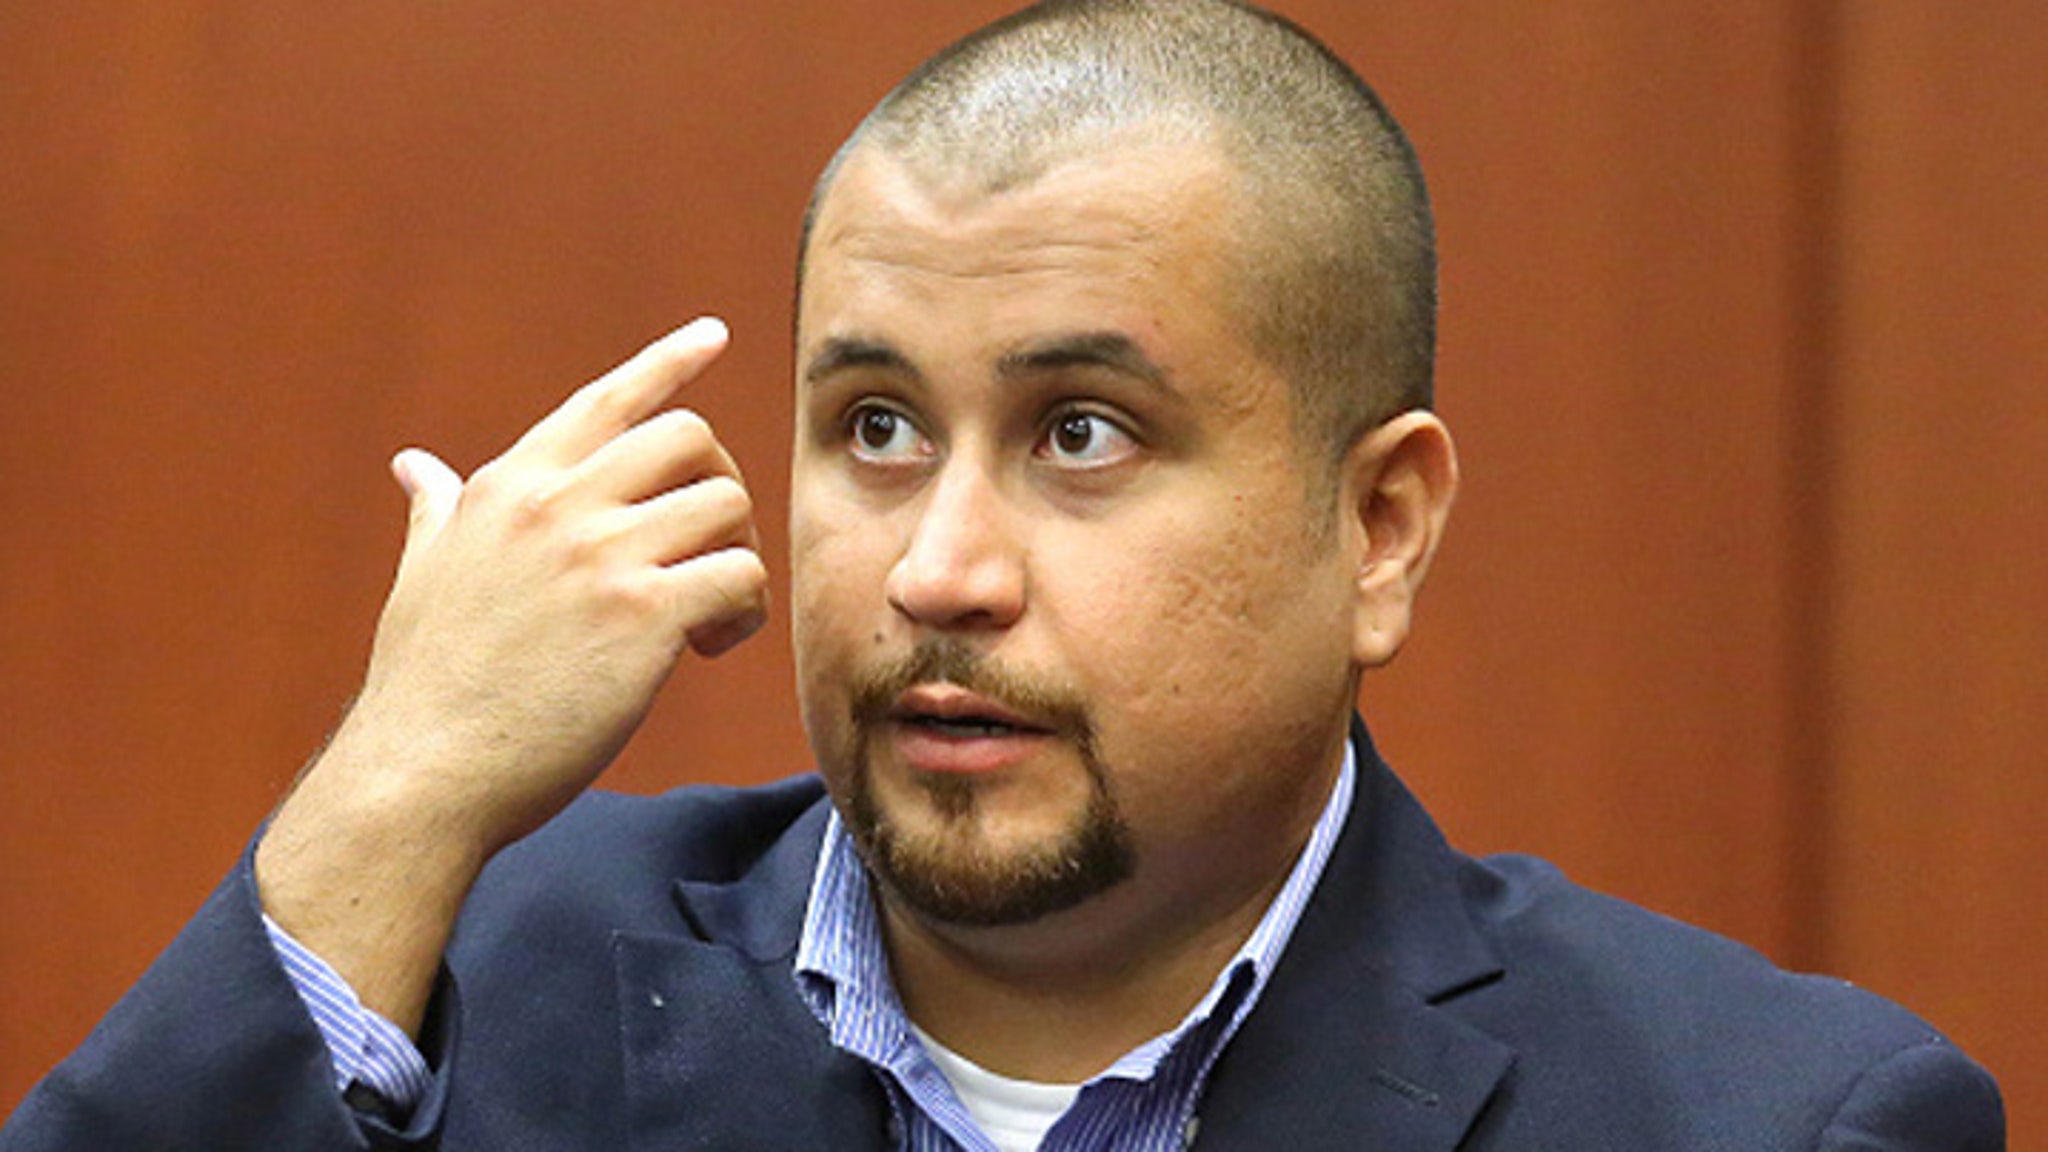 George Zimmerman Relists Trayvon Martin Gun